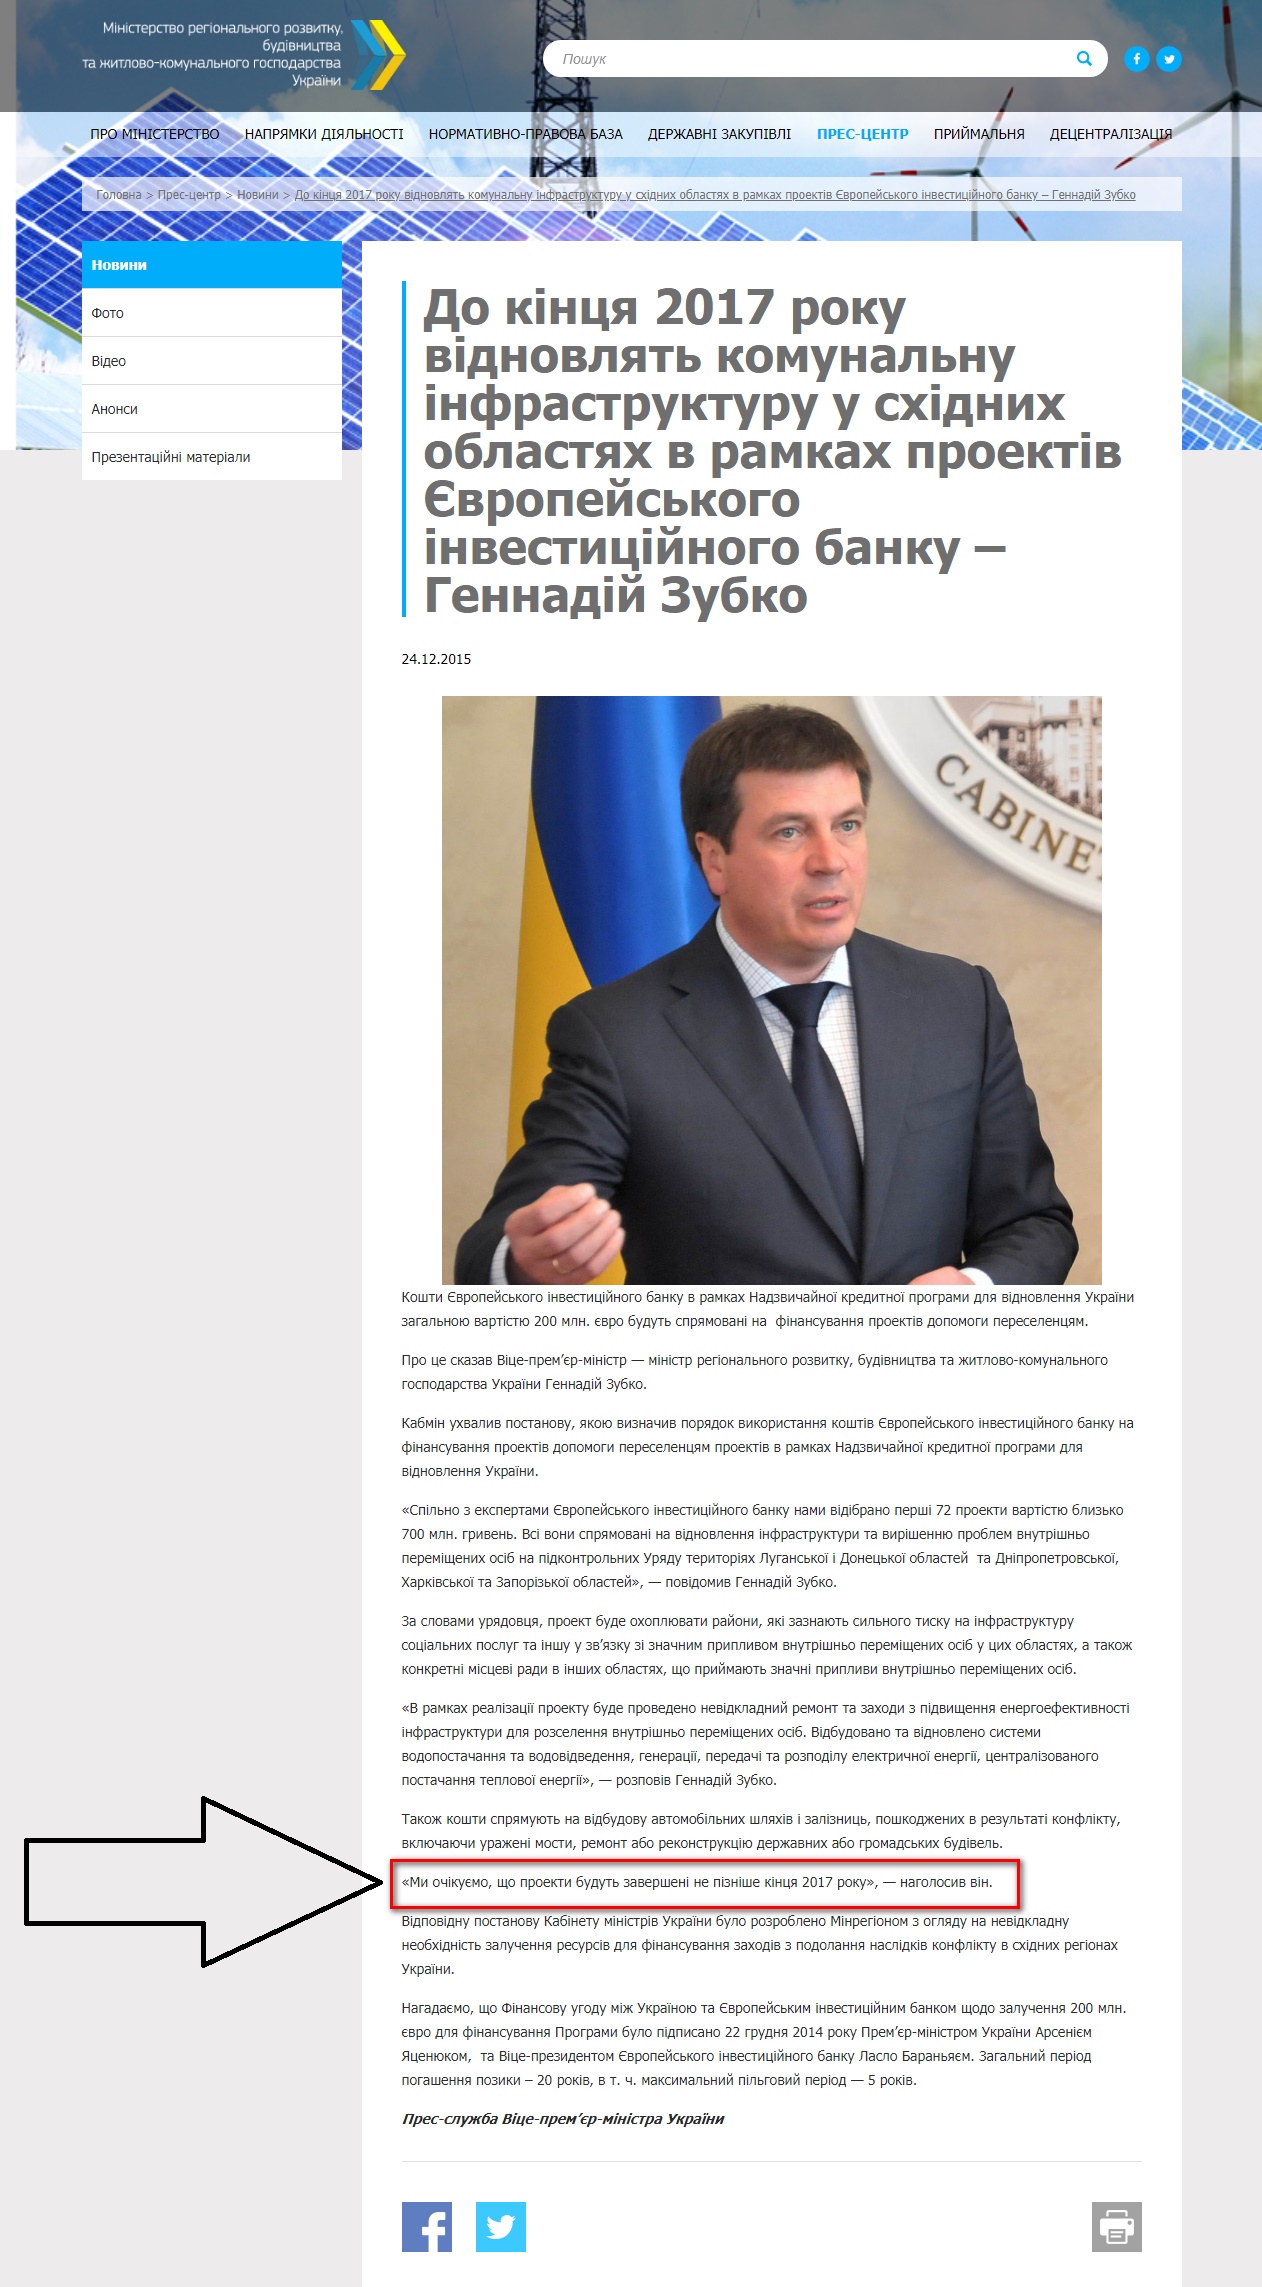 http://new.minregion.gov.ua/press/news/do-kintsya-2017-roku-vidnovlyat-komunalnu-infrastrukturu-u-shidnih-oblastyah-v-ramkah-proektiv-yevropeyskogo-investitsiynogo-banku-gennadiy-zubko/